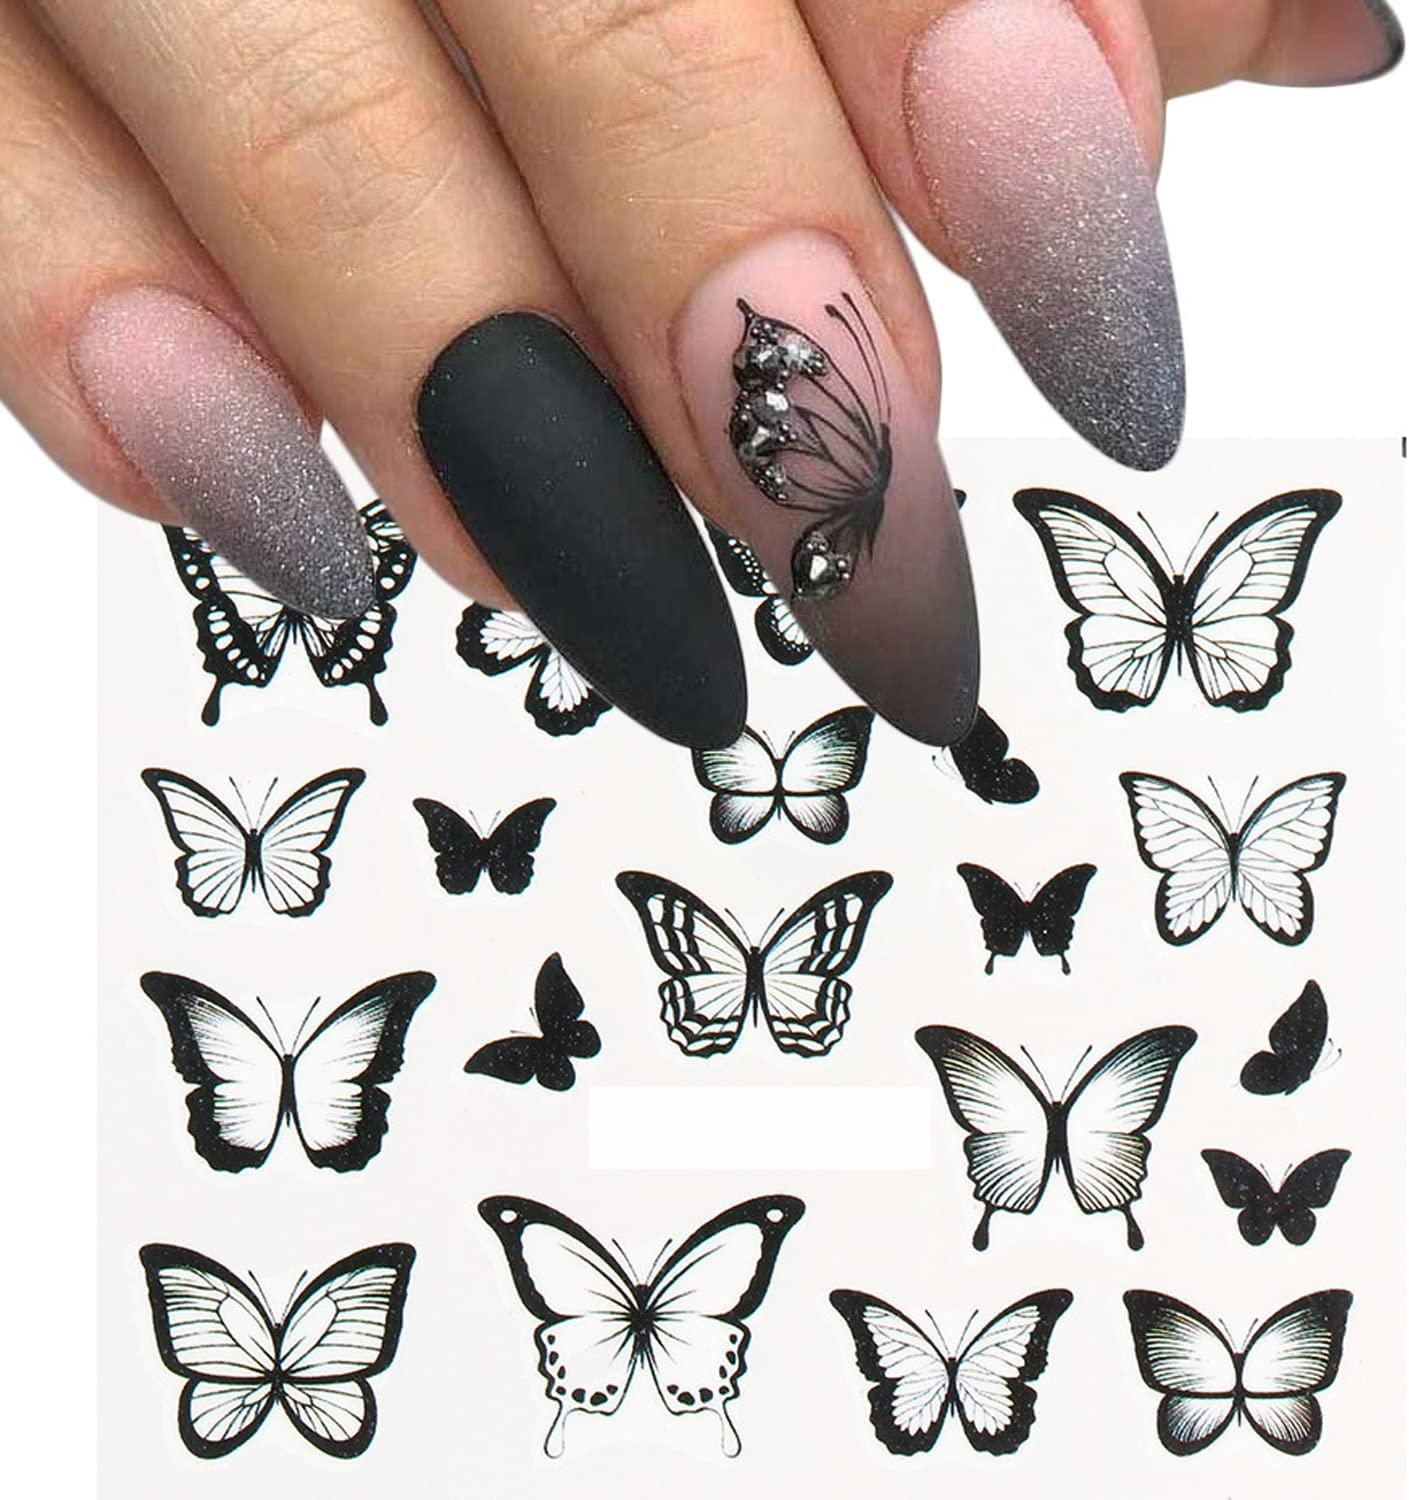 How to make nail art sticker at home | Diy nail stickers | Homemade nail  art stickers - YouTube